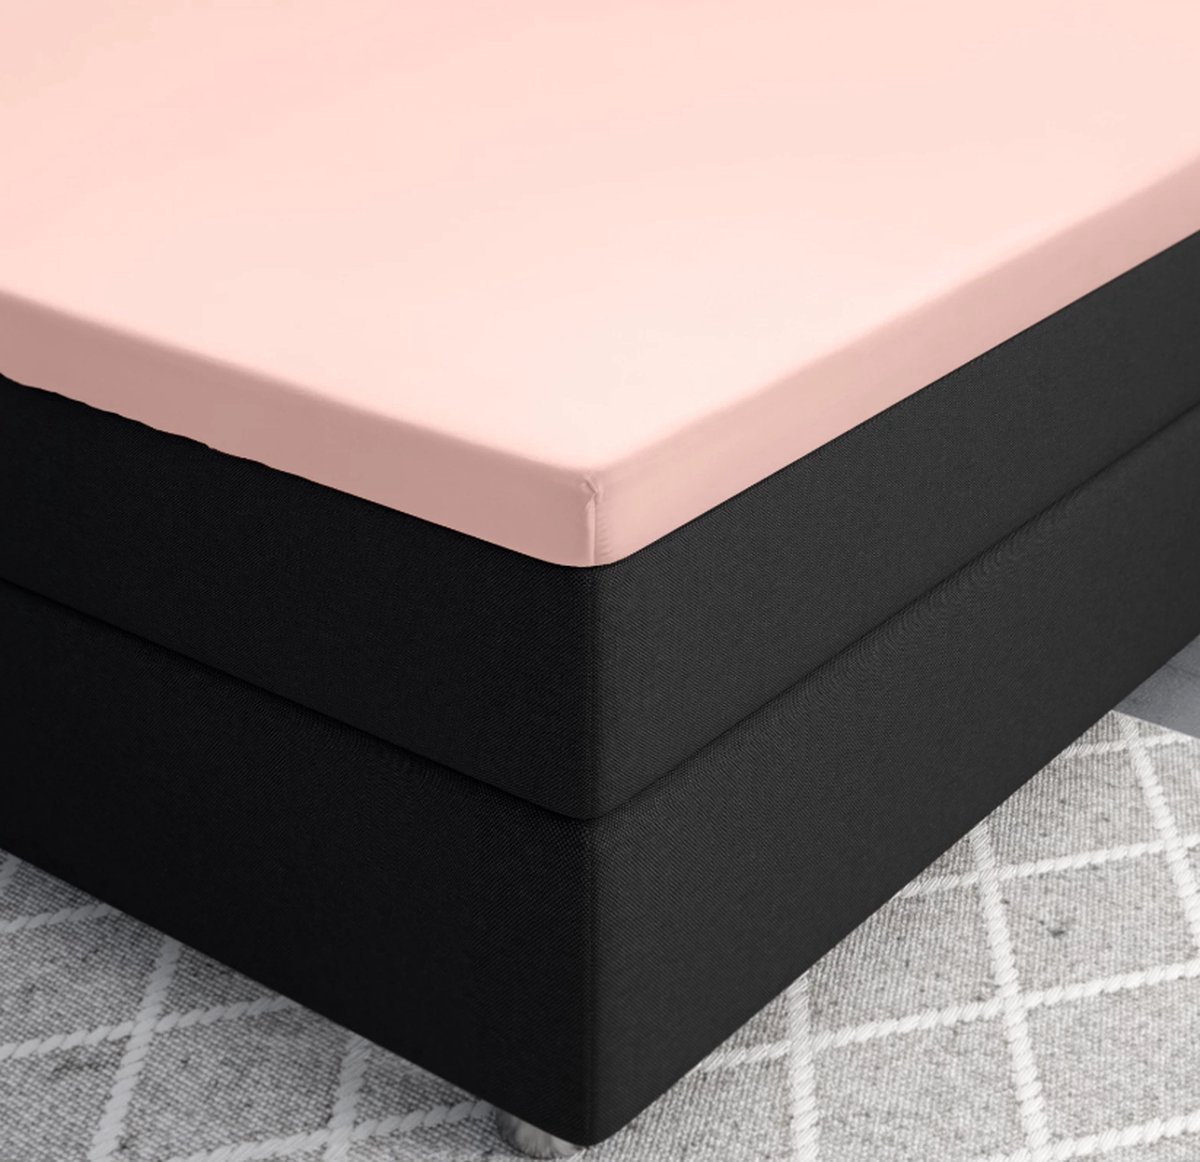 Premium katoen/satijn hoeslaken roze - 160x220 (lits-jumeaux extra lang) - zacht en ademend - luxe en chique uitstraling - subtiele glans - ideale pasvorm